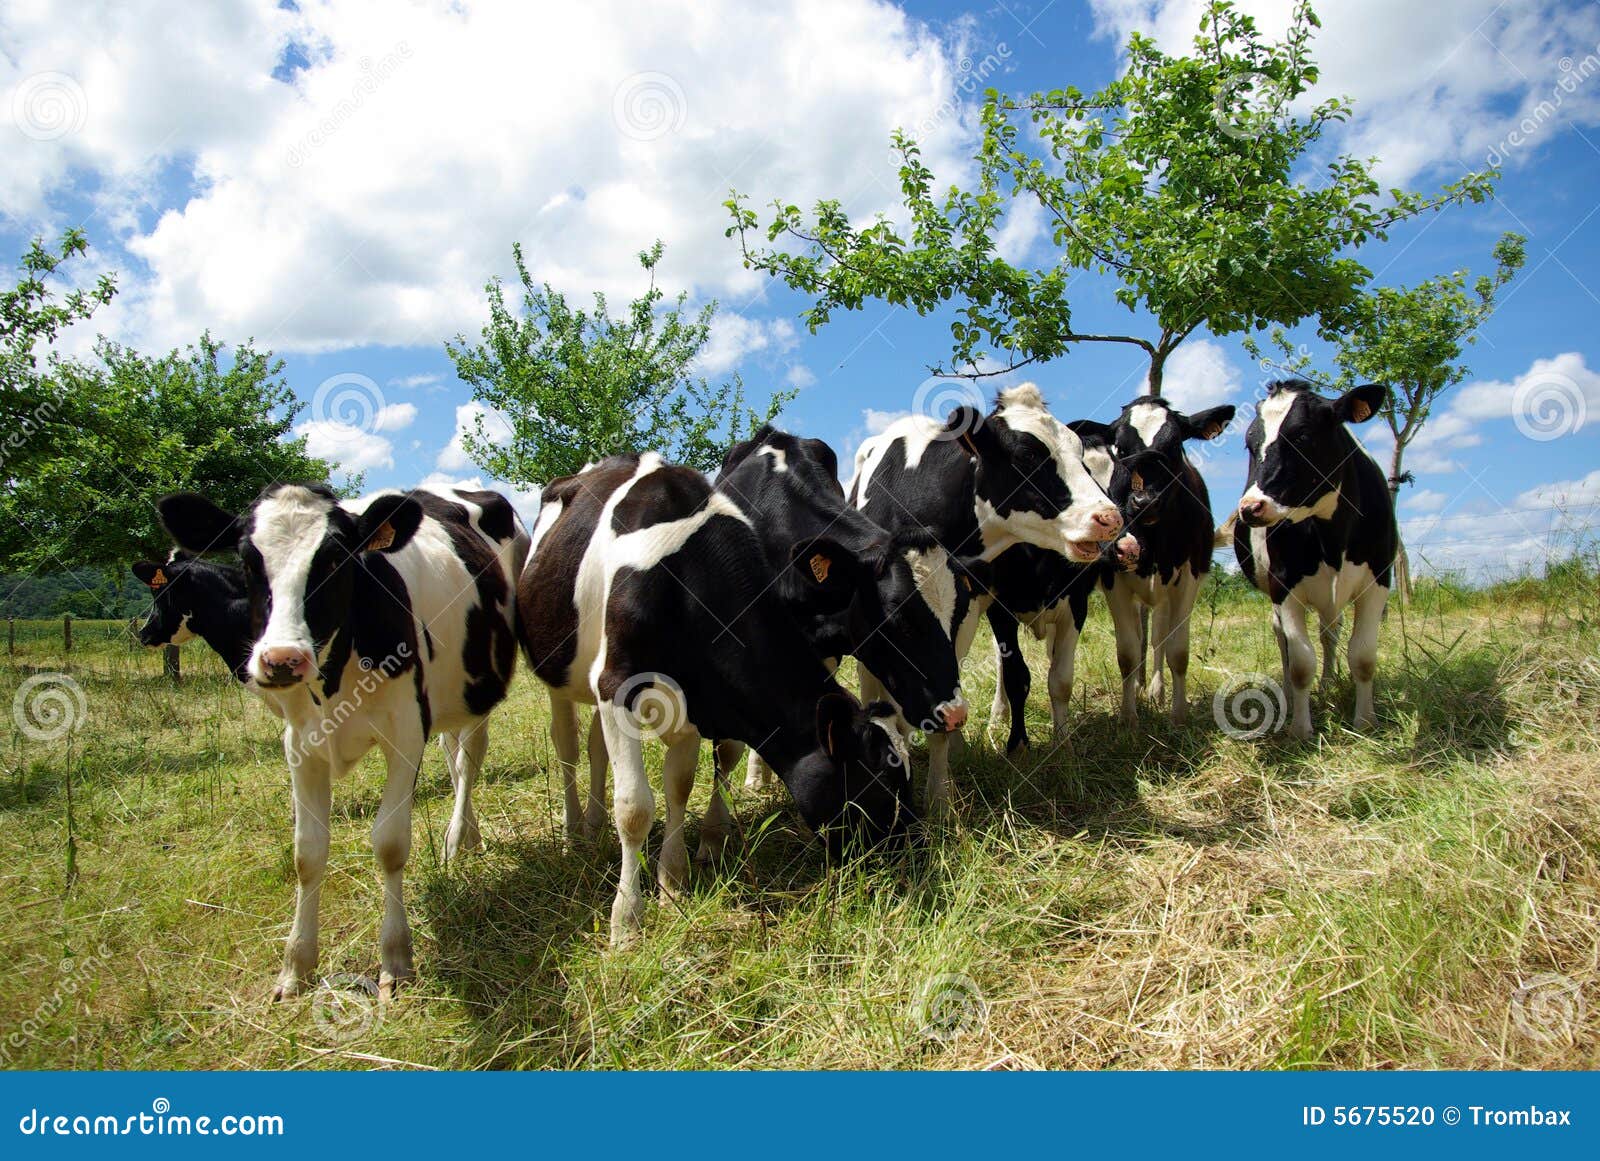 Groep koeien in schuine stand-omhooggaande mening met een blauwe hemel.